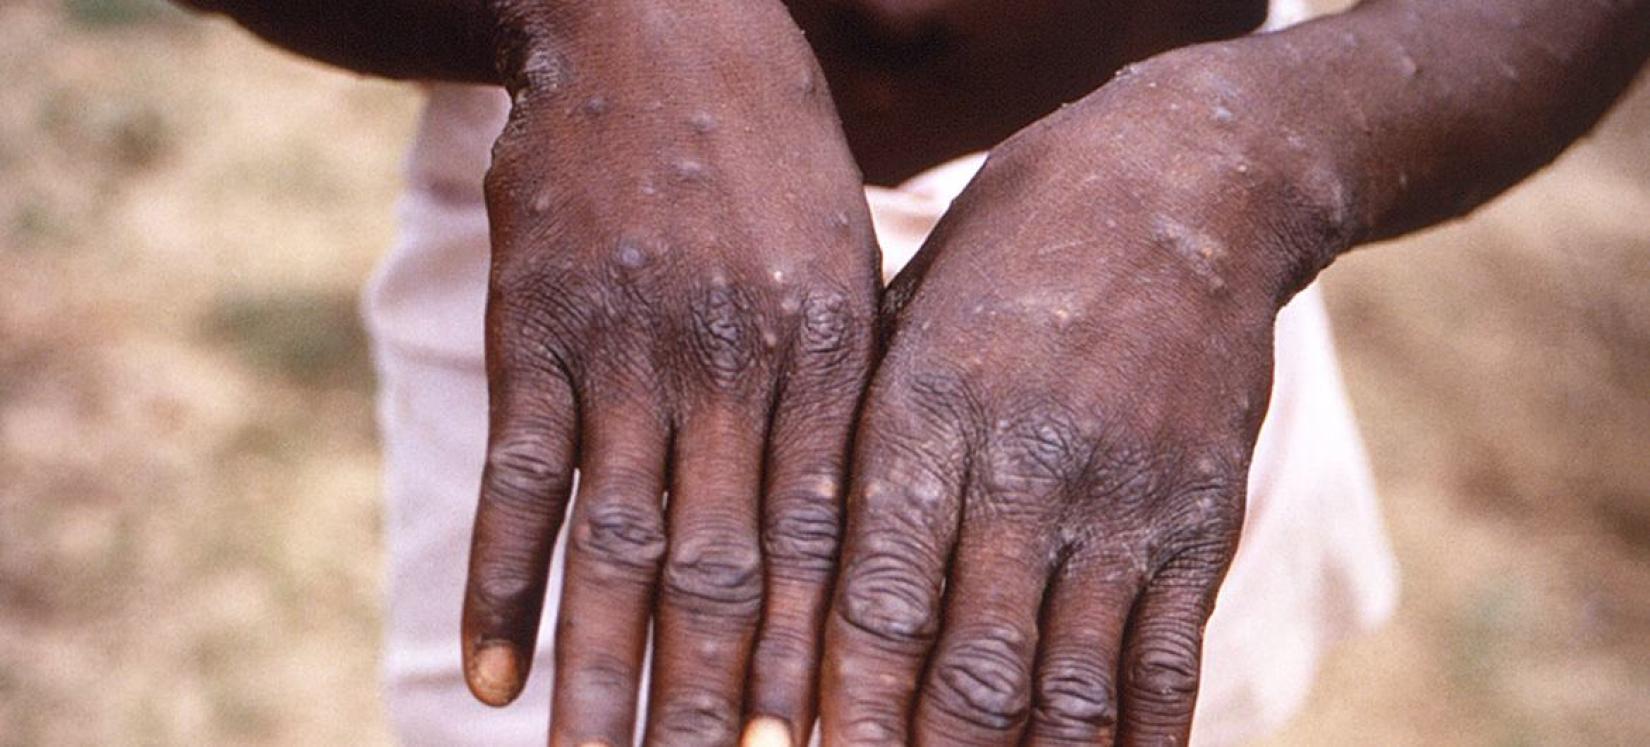 Um jovem mostra as mãos durante um surto de varíola dos macacos na República Democrática do Congo.